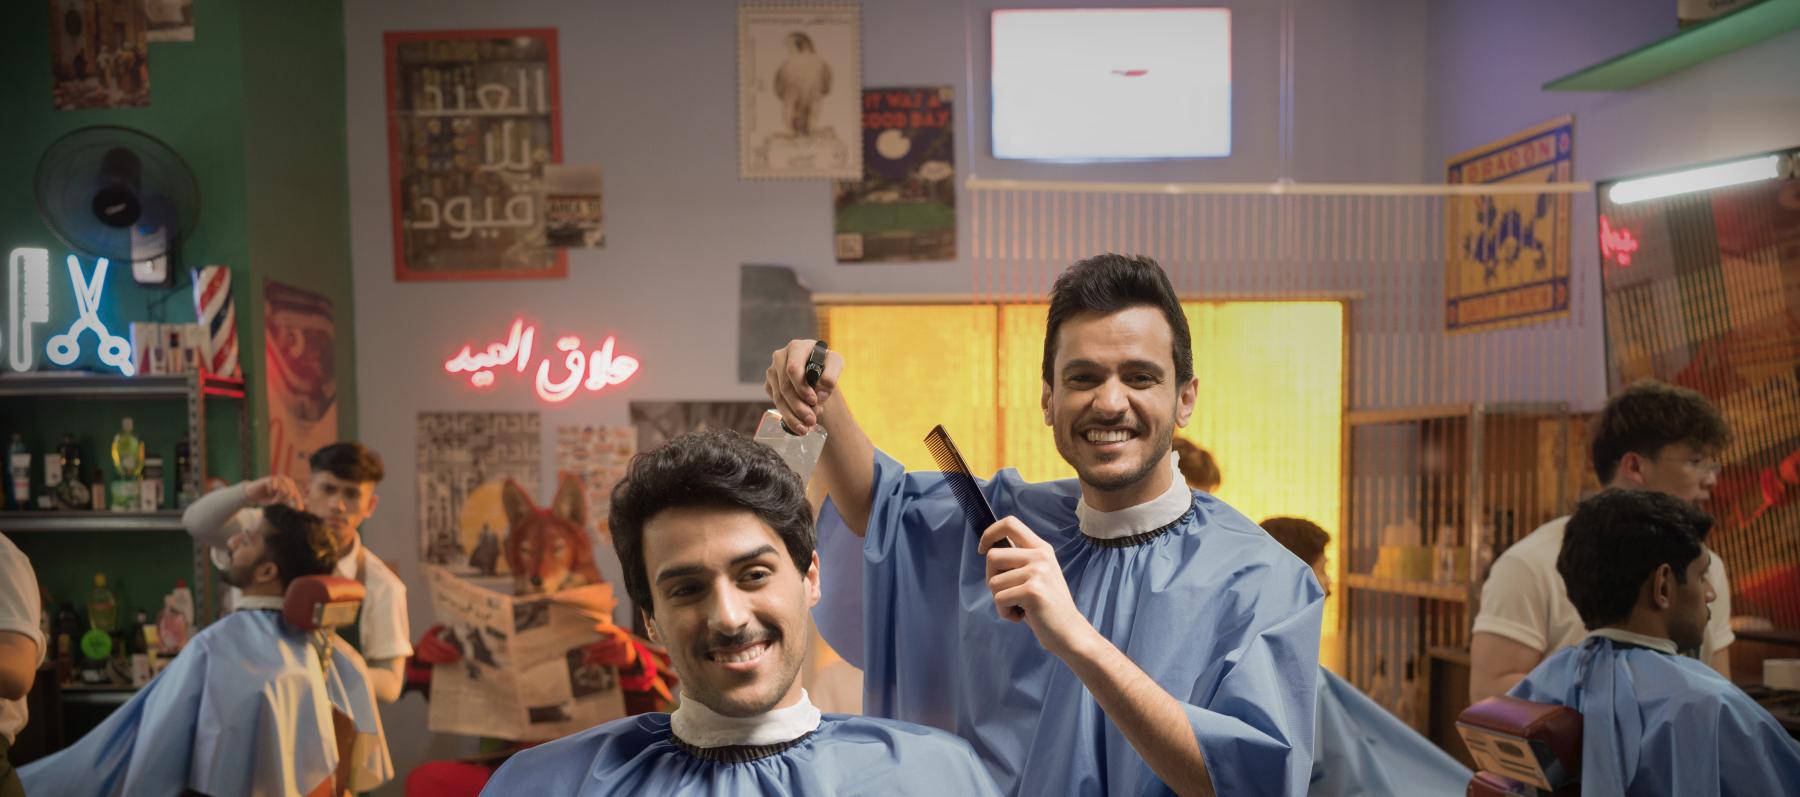 عايض يوسف وحمد الخزينة يتعاونان في أغنية "عيد بلا قيود"